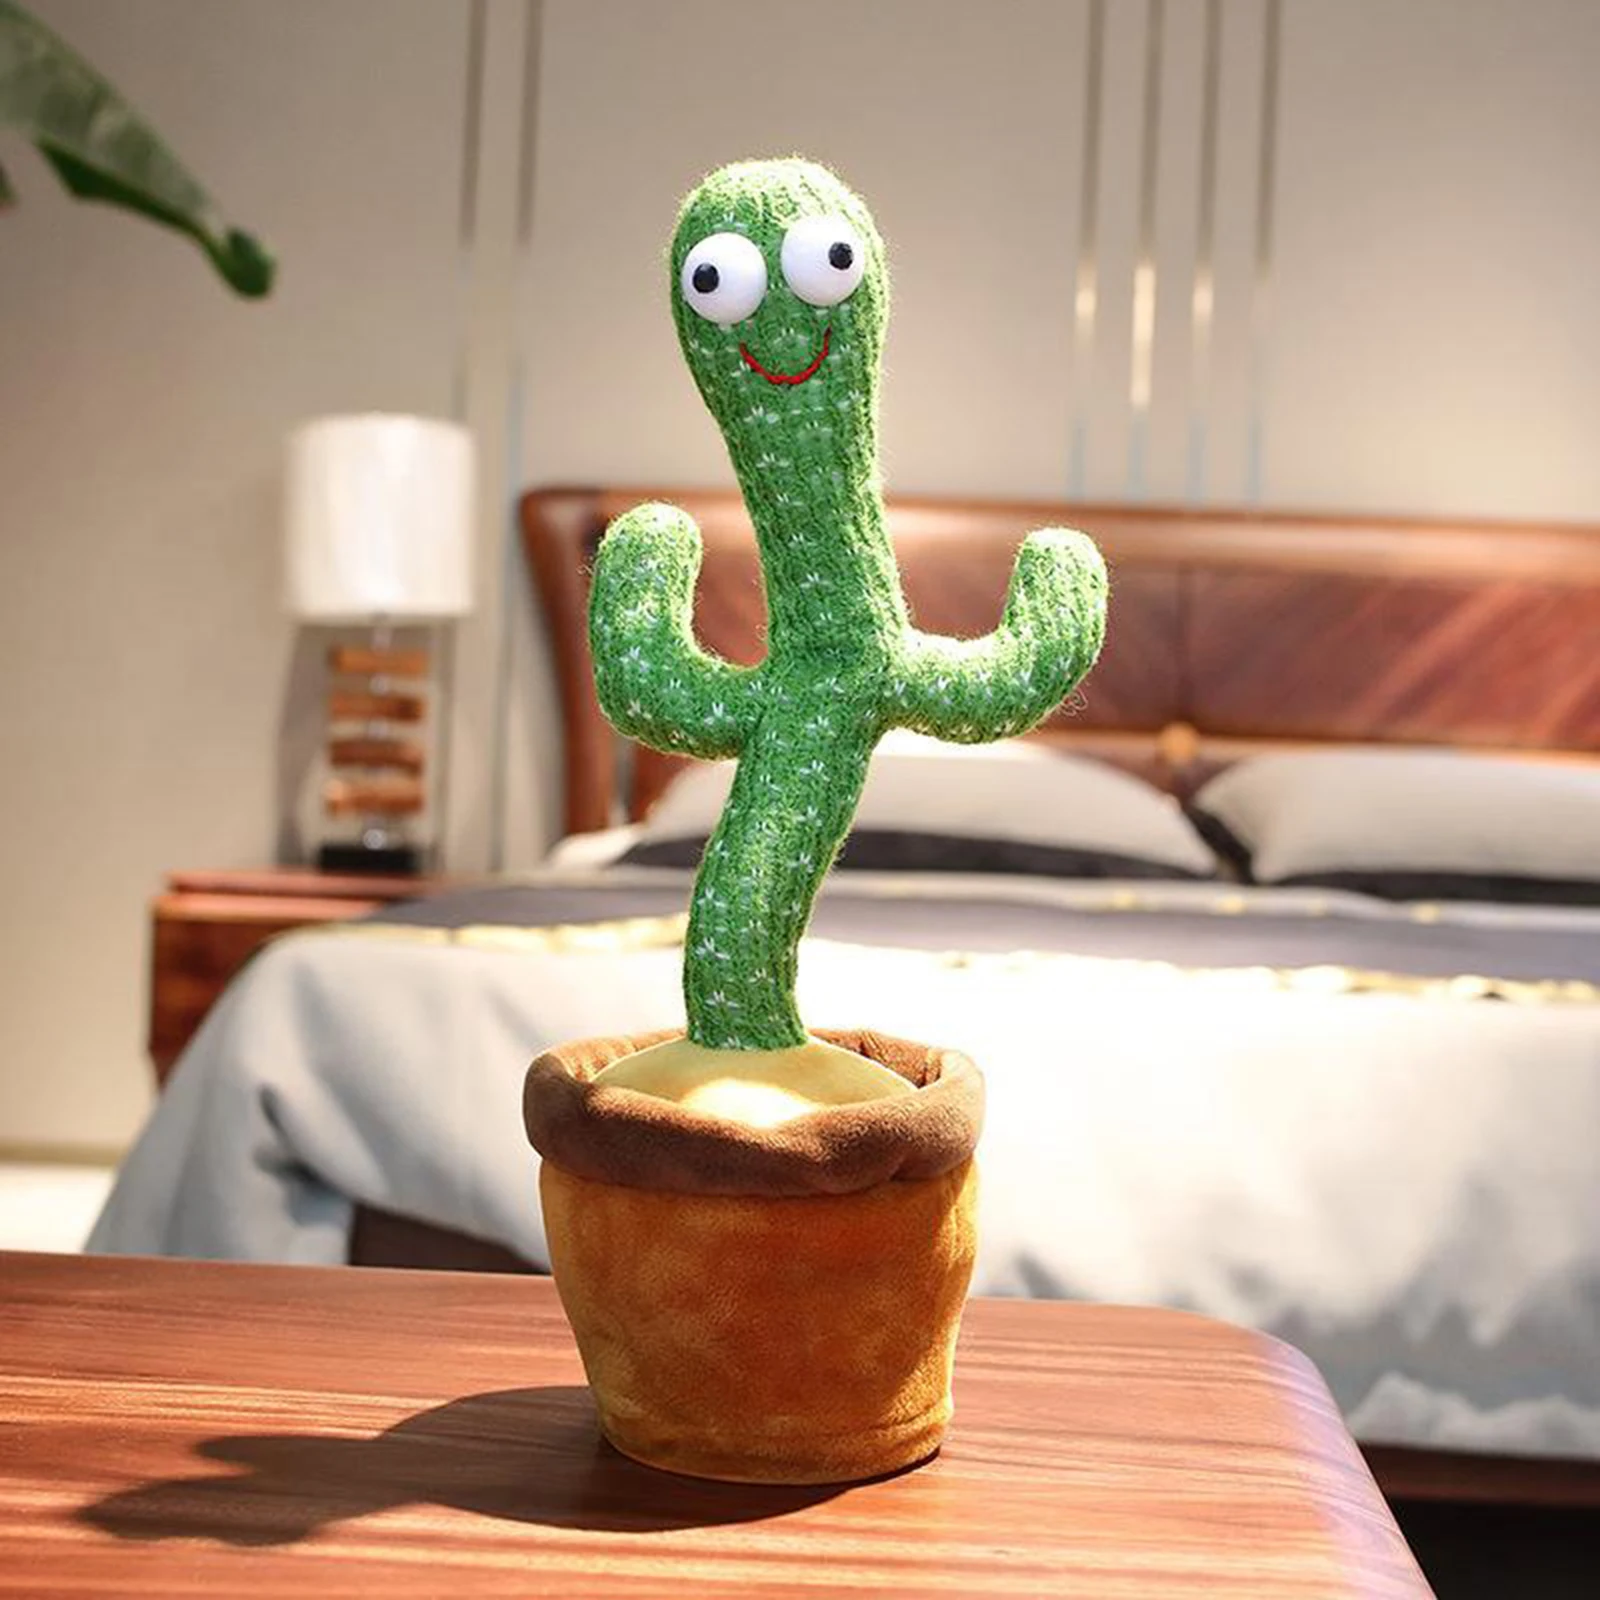 Electronic Dancing Cactus Toy Swing Kids Green Cactus Toy Bedroom Desktop